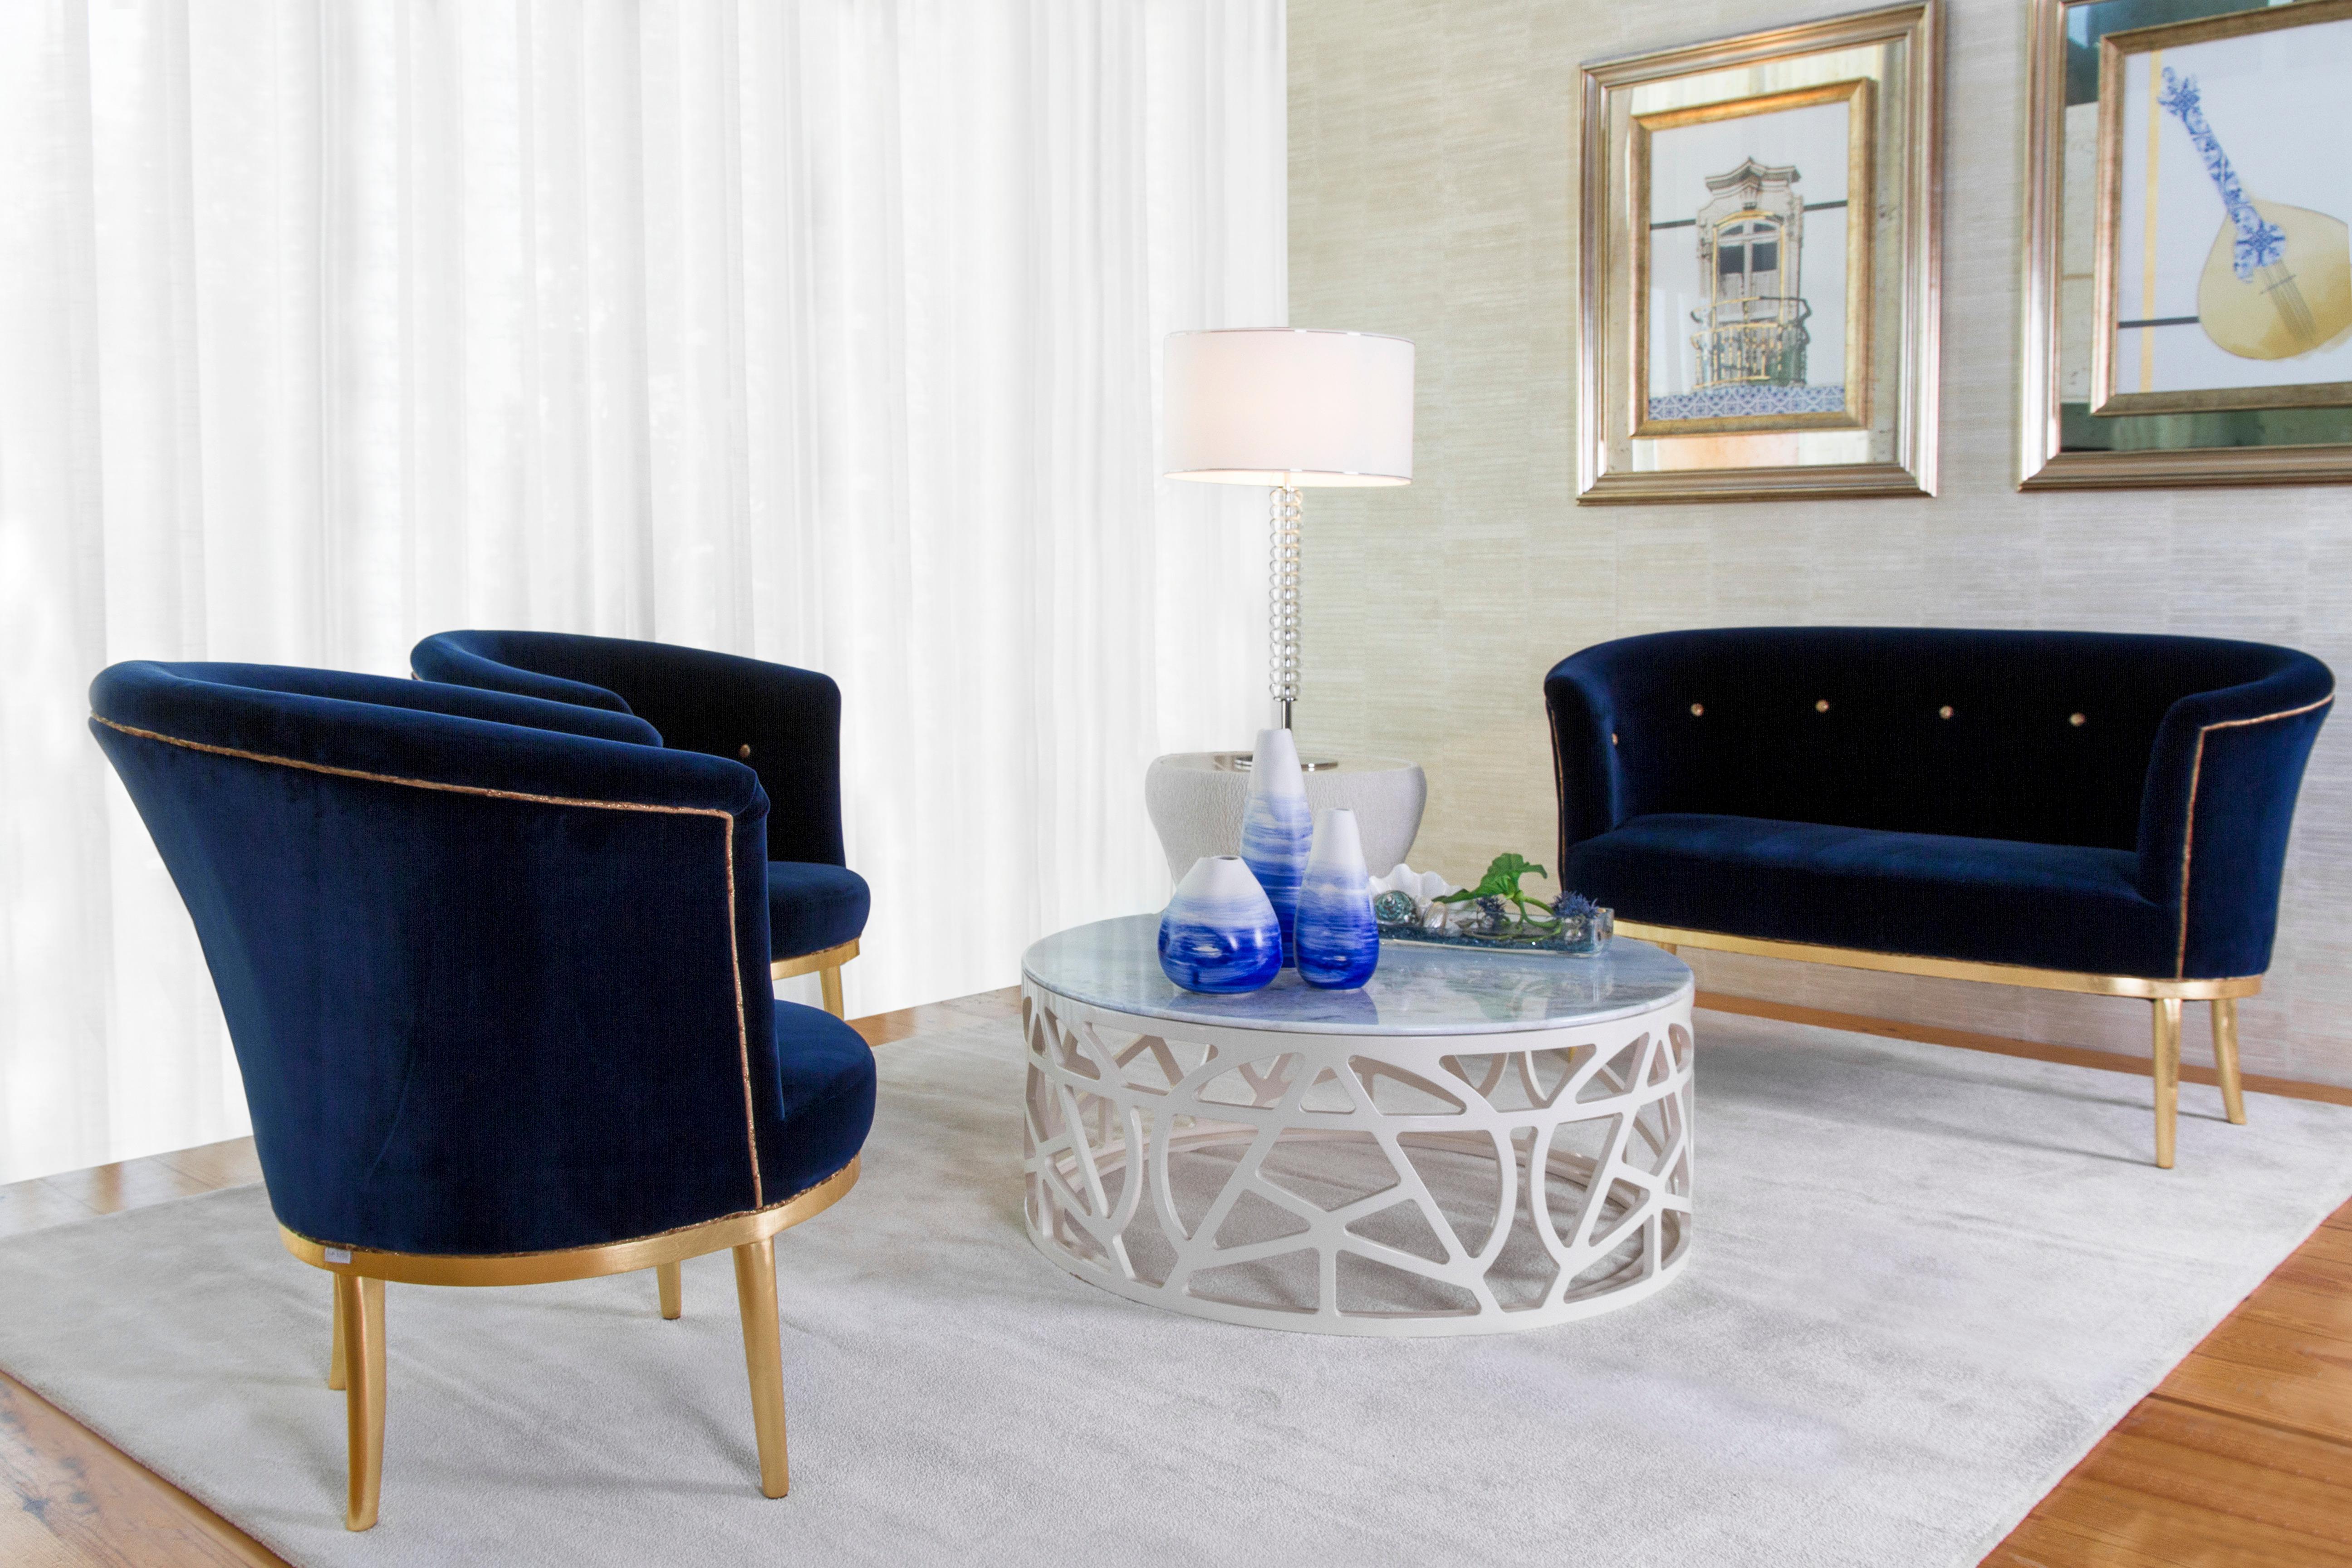 Portuguese Art Deco Lisboa Lounge Chair Blue Velvet Gold Leaf Handmade Portugal Greenapple For Sale